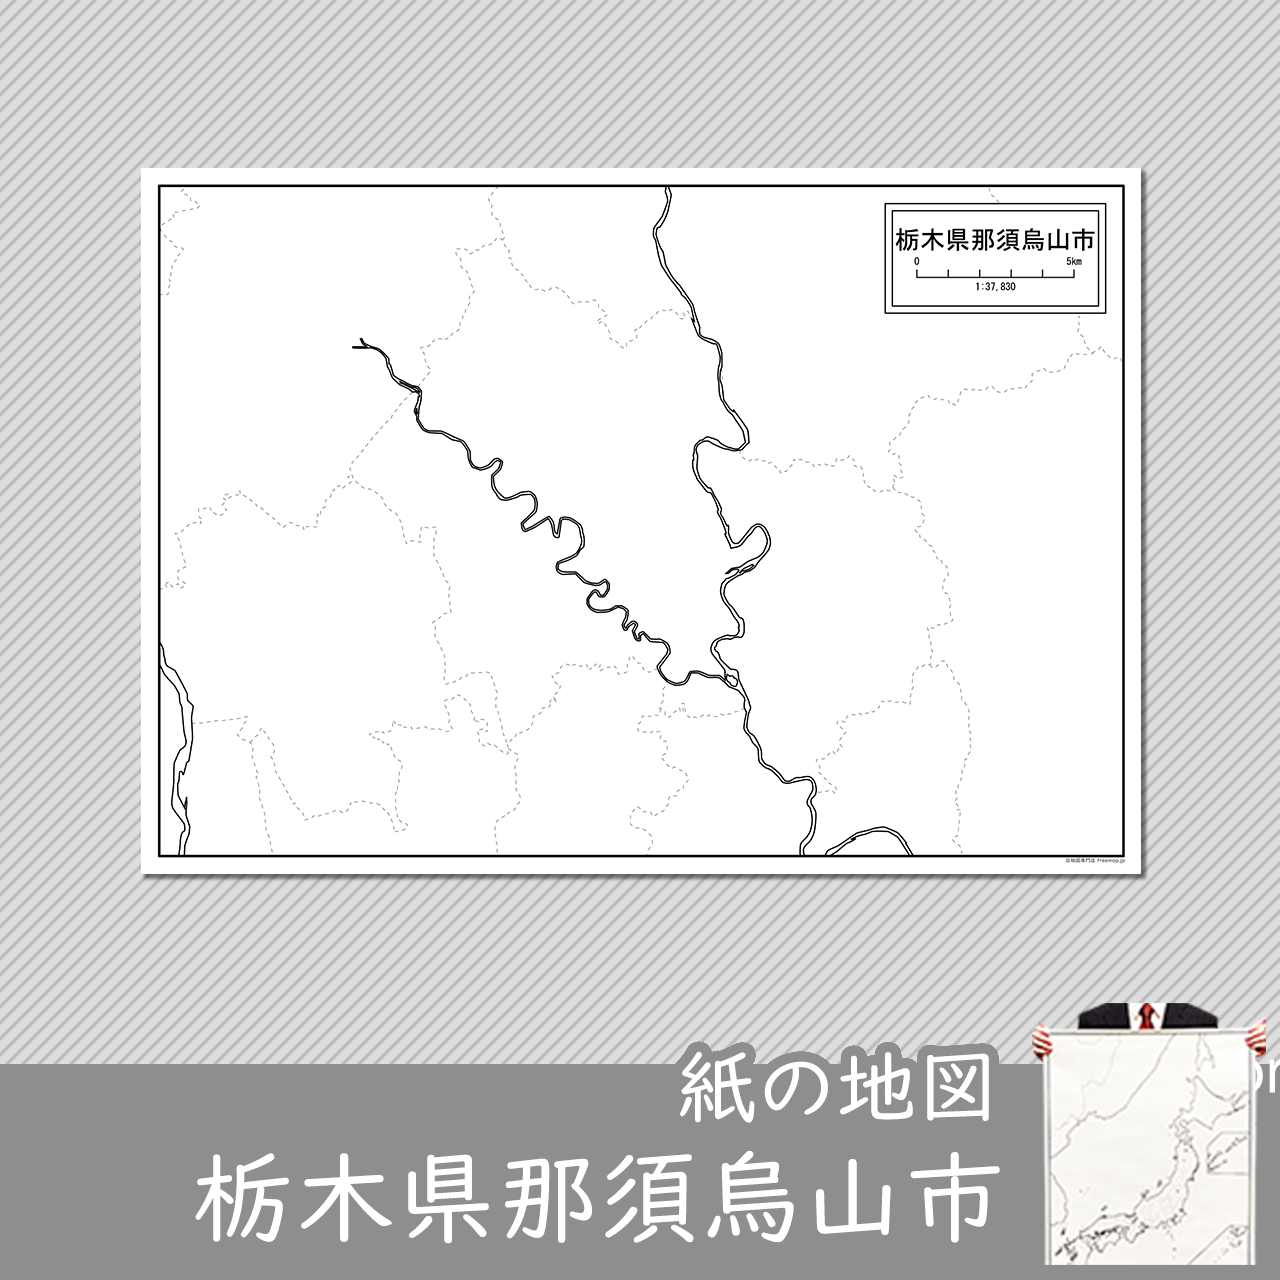 那須烏山市の紙の白地図のサムネイル